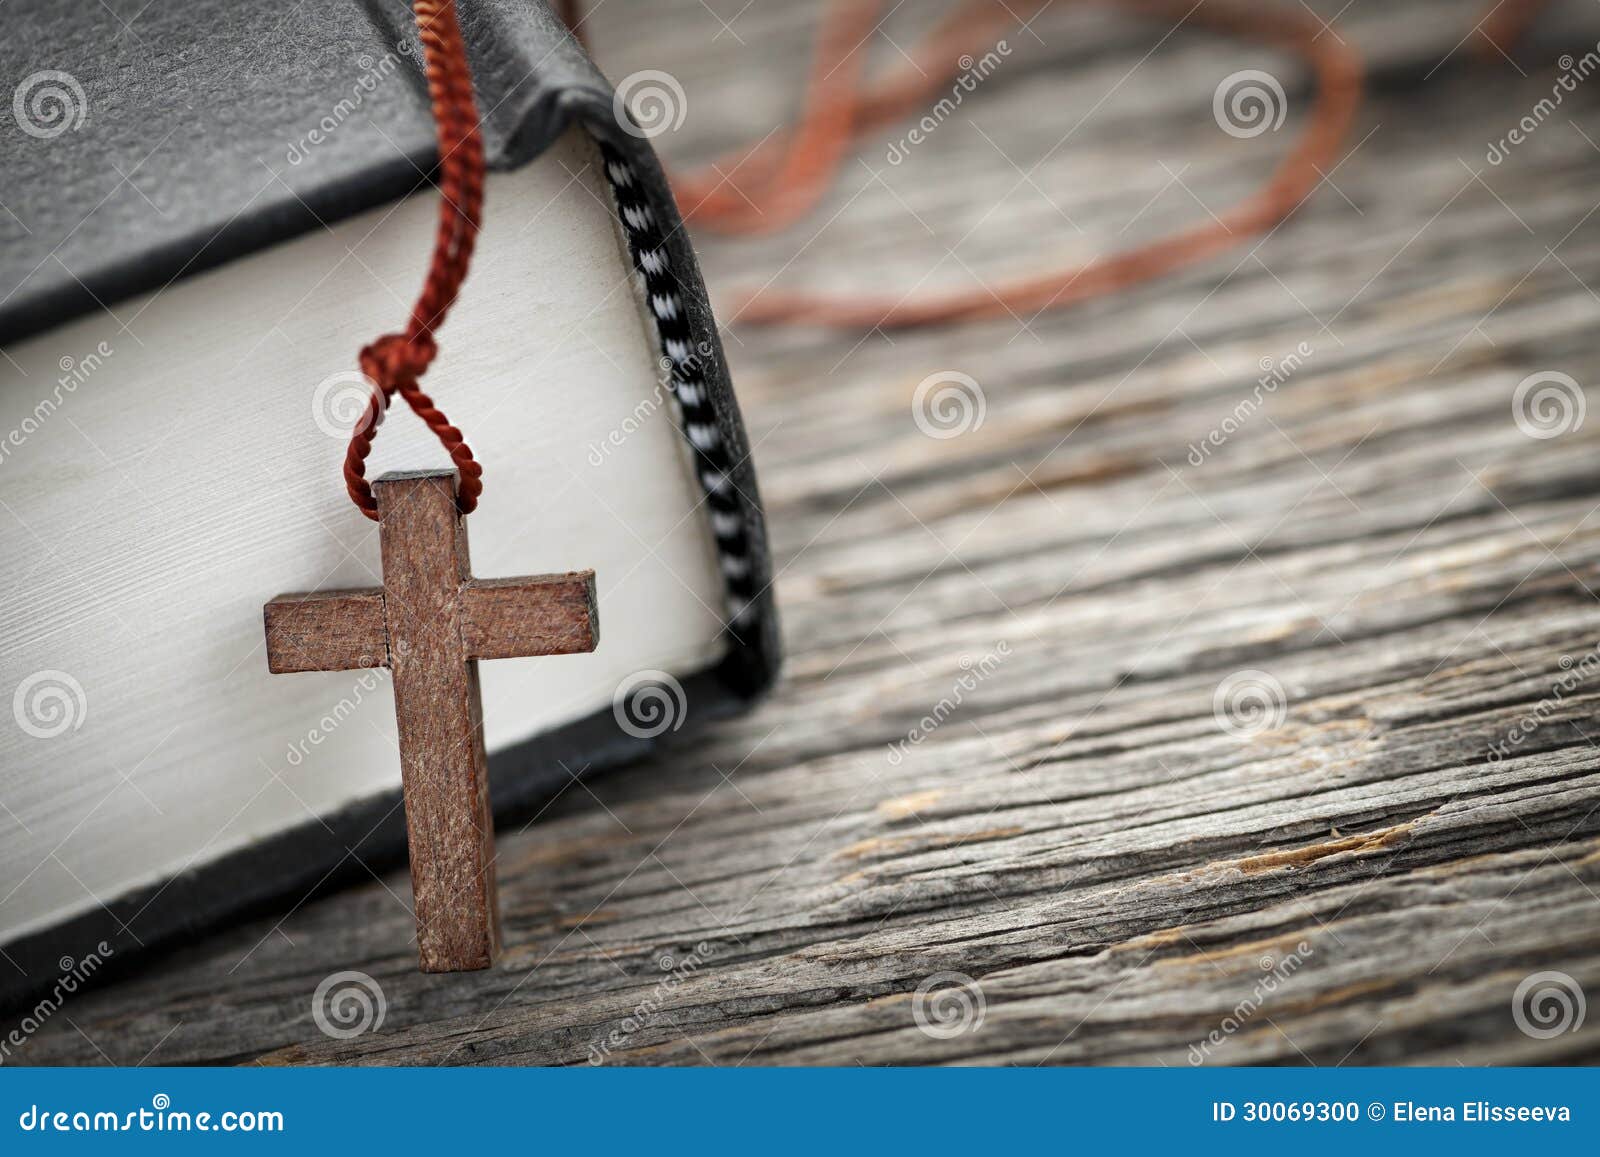 十字架和圣经. 木基督徒发怒项链特写镜头在圣经旁边的